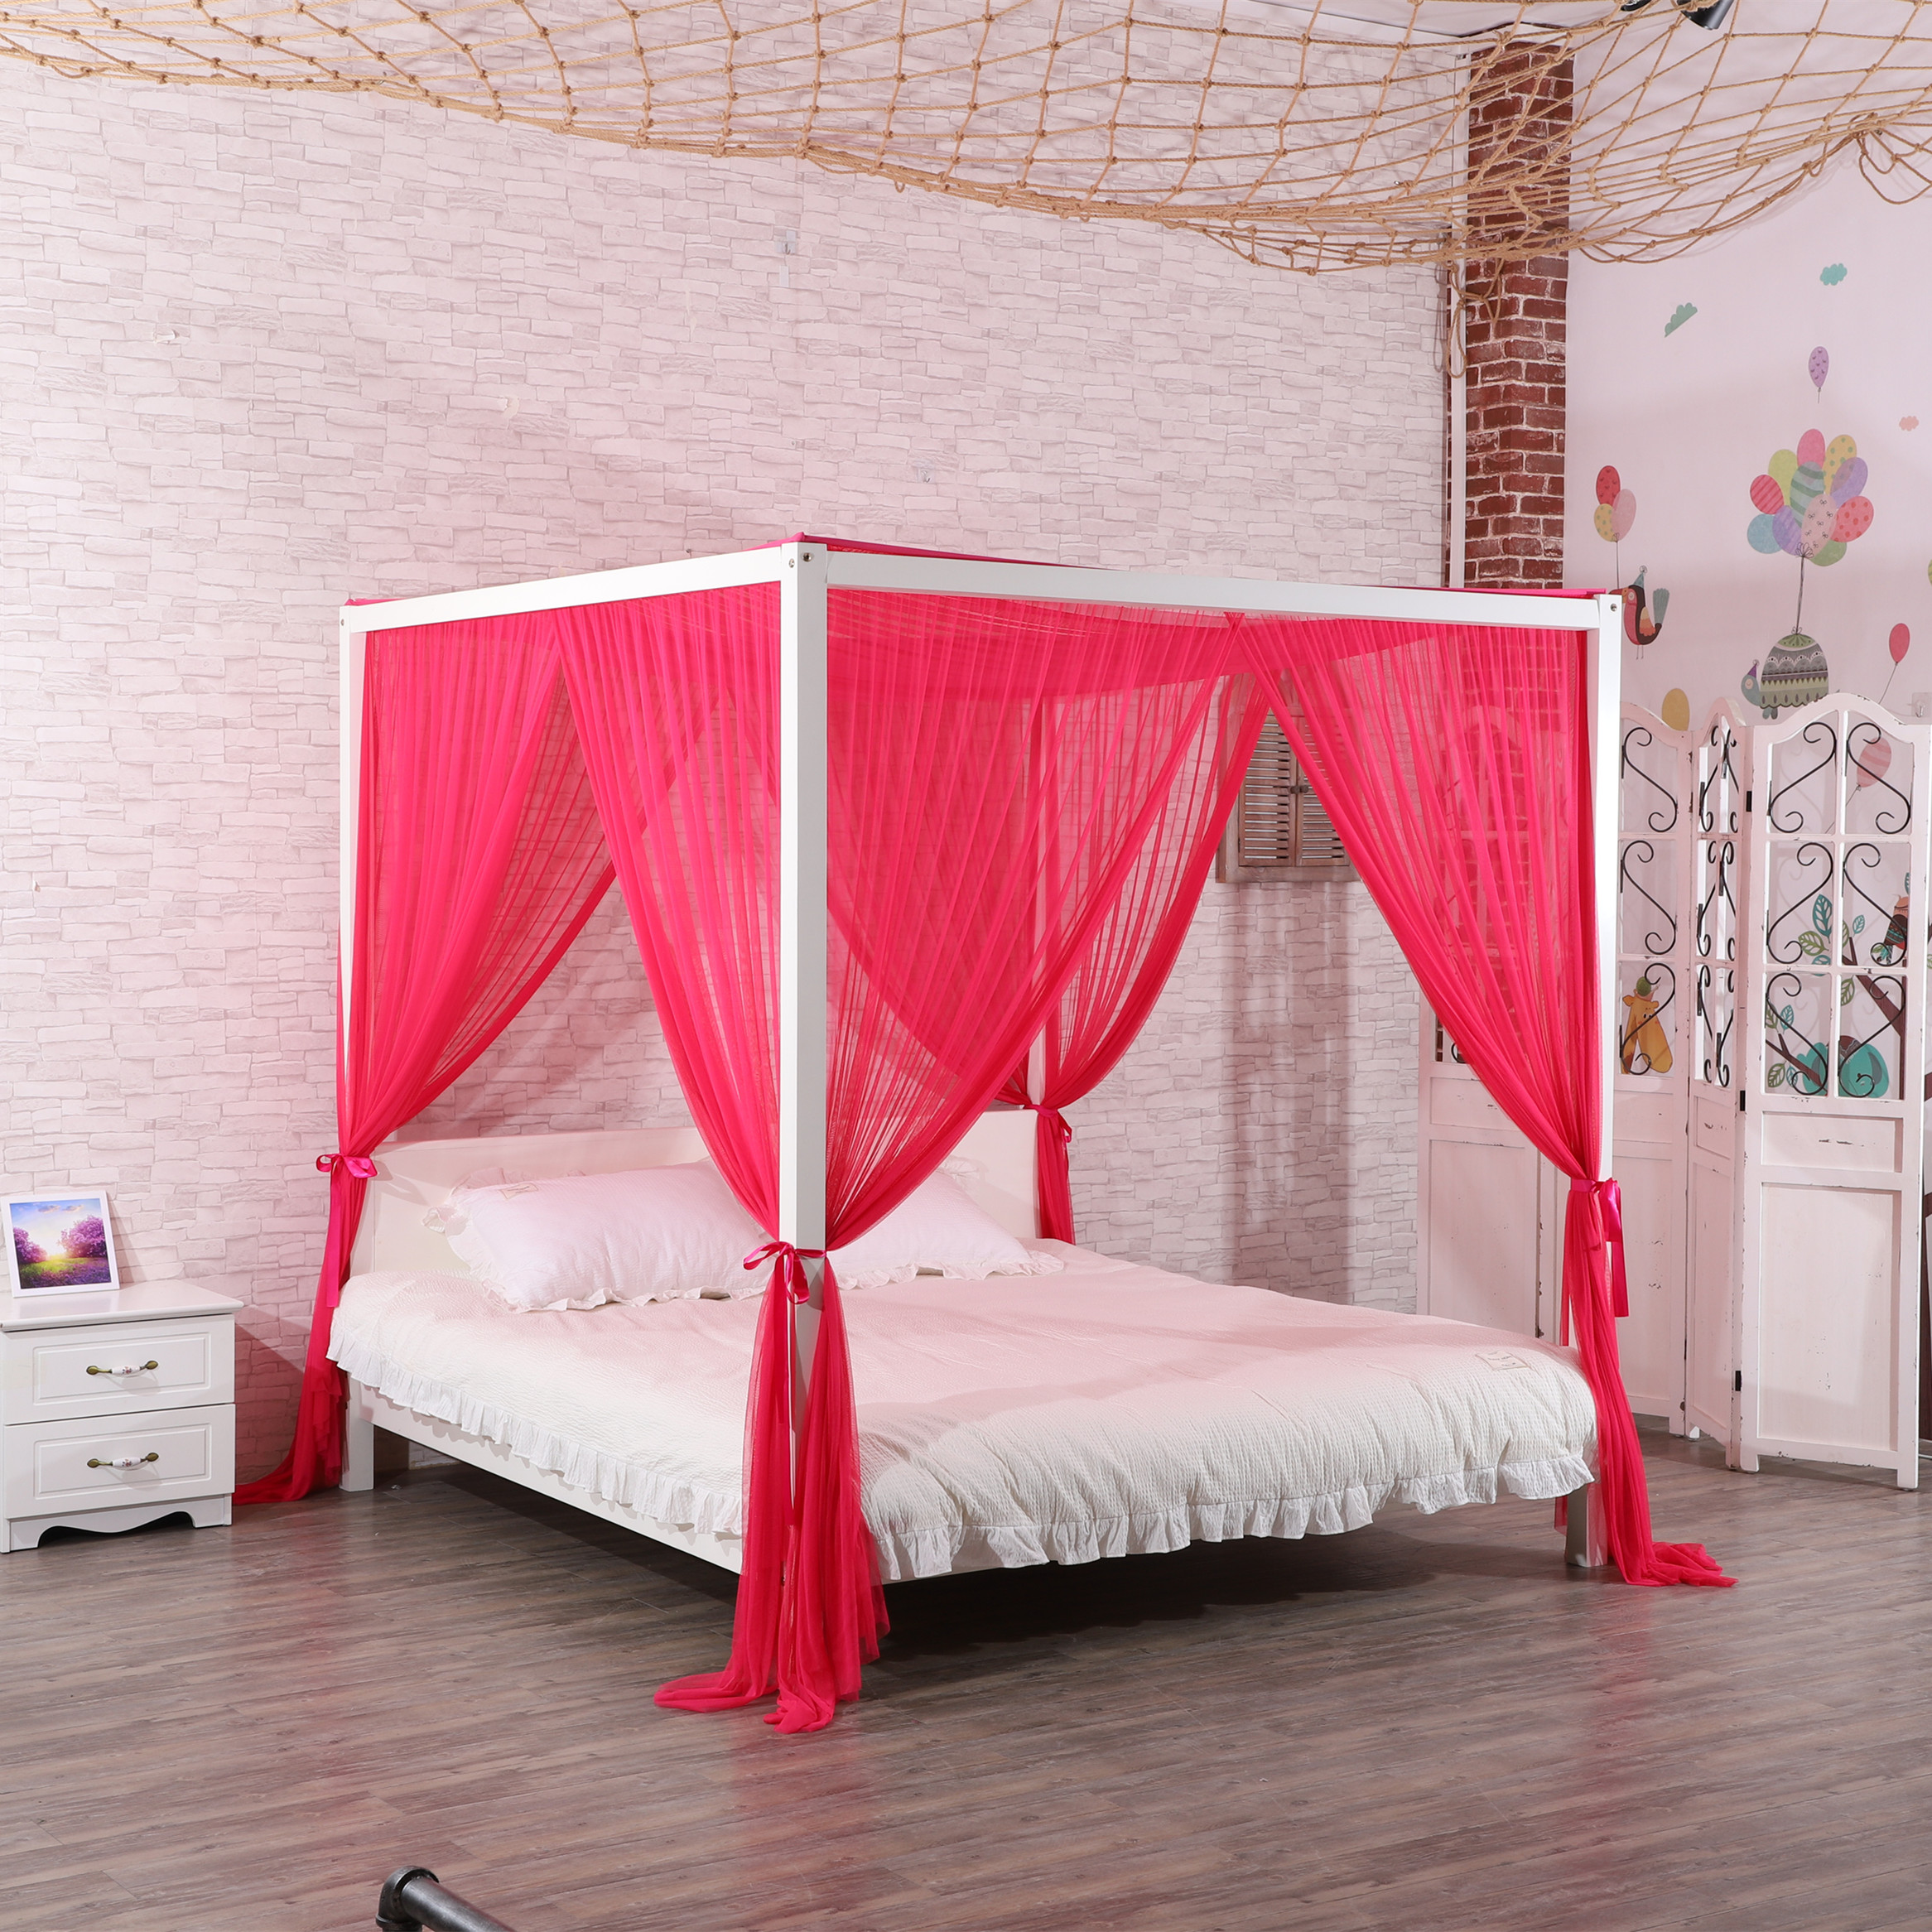 2020 New Style 100% Polyester Hochwertige rechteckige Form Home Decoration Doppelbett Netting King Size Moskitonetz für Bett